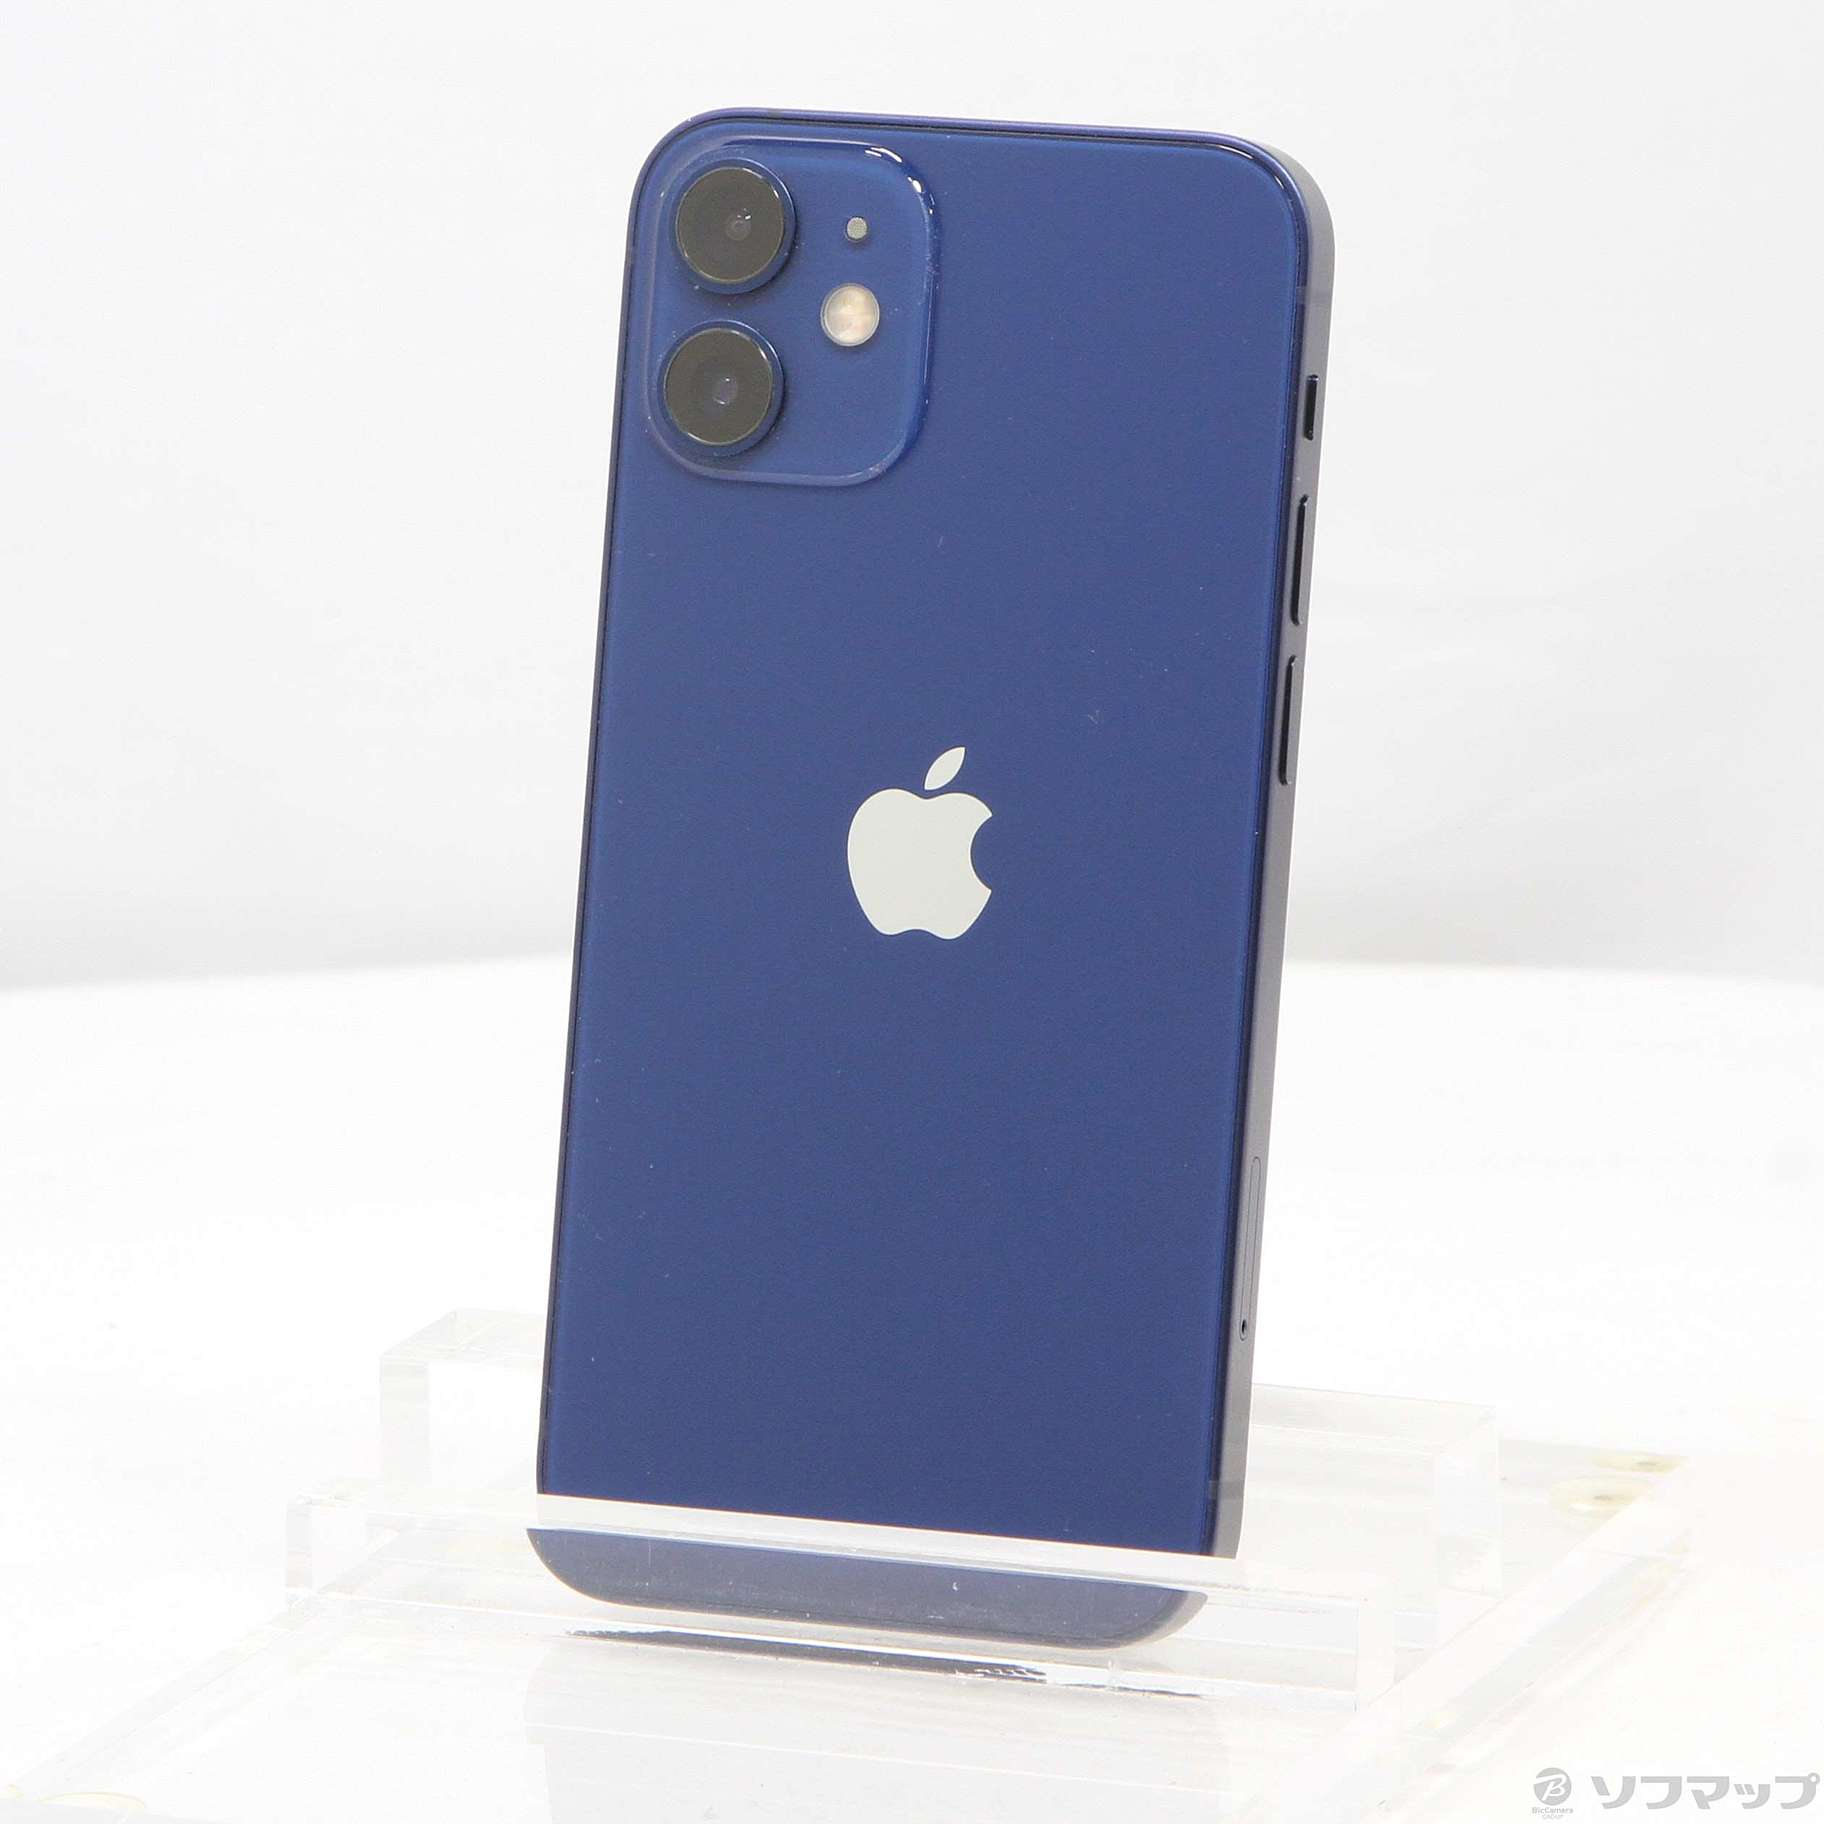 iPhone 12 mini SIMフリー 64GB 128GB 256GB ブラック ホワイト レッド グリーン ブルー パープル A B C  グレード 本体 1年保証 バッテリー80%以上